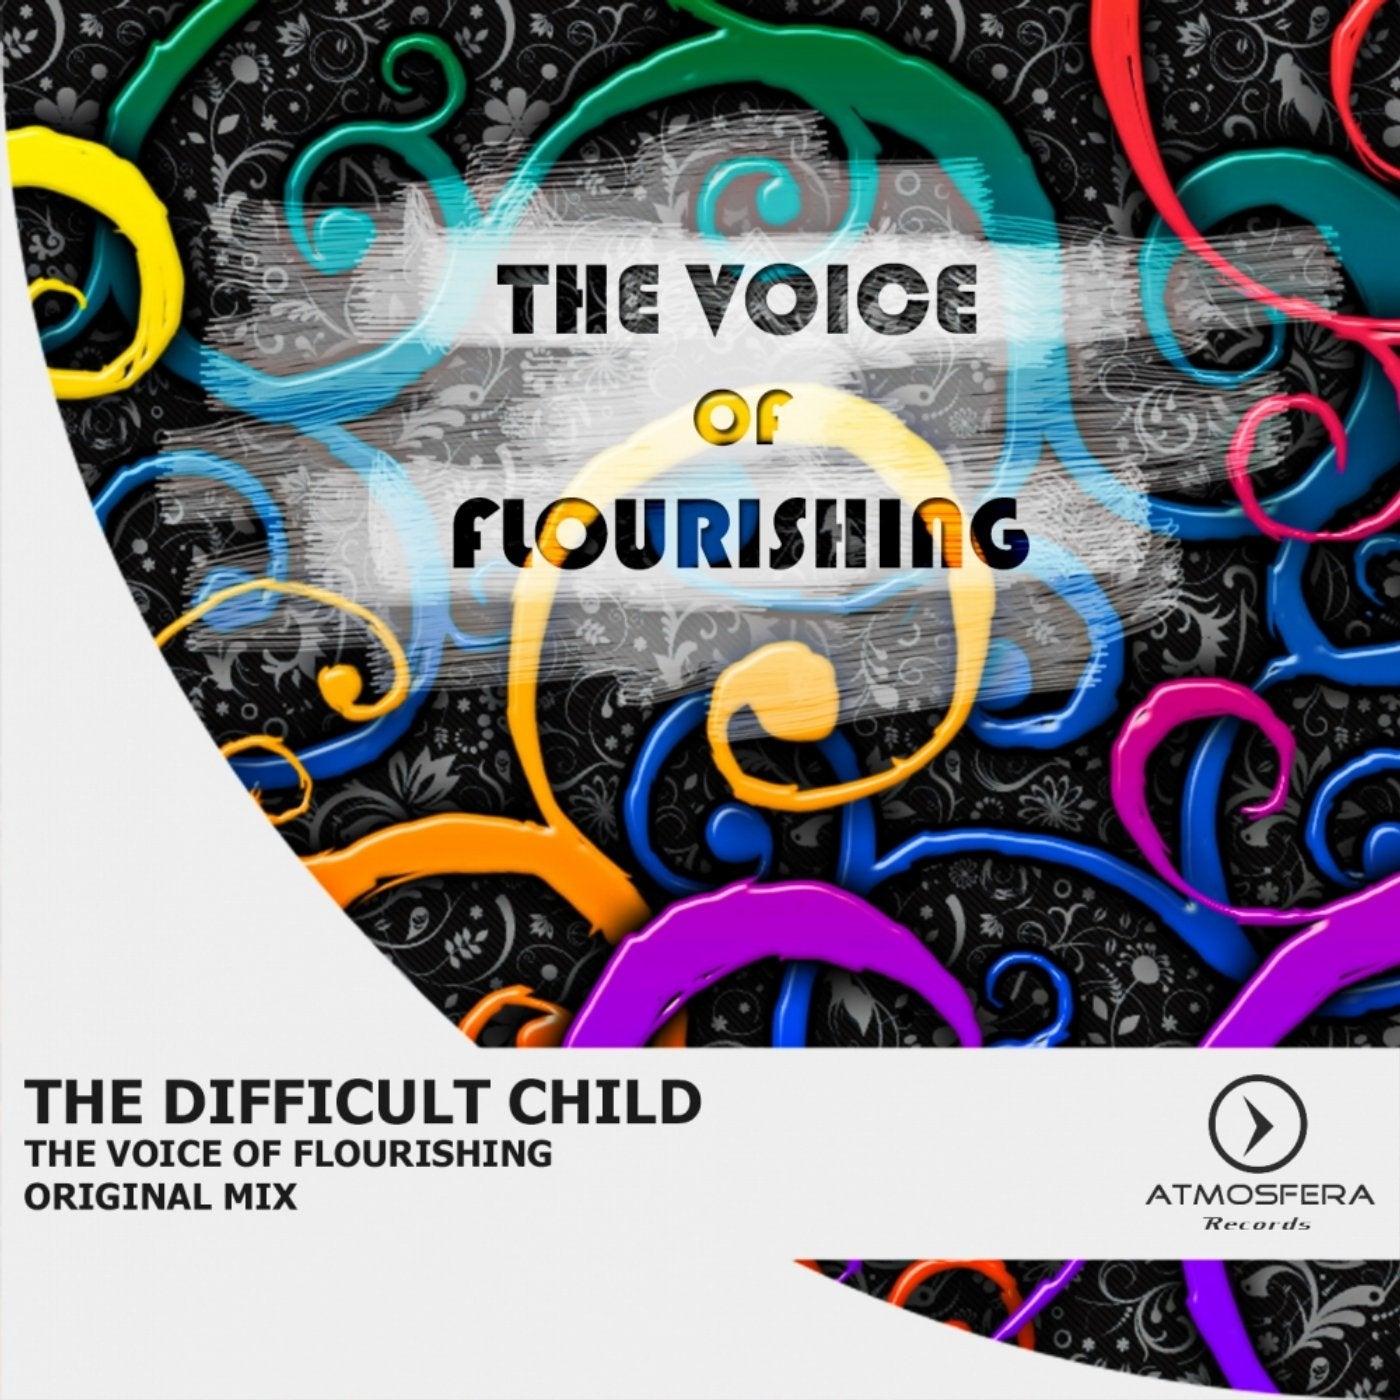 The Voice of Flourishing